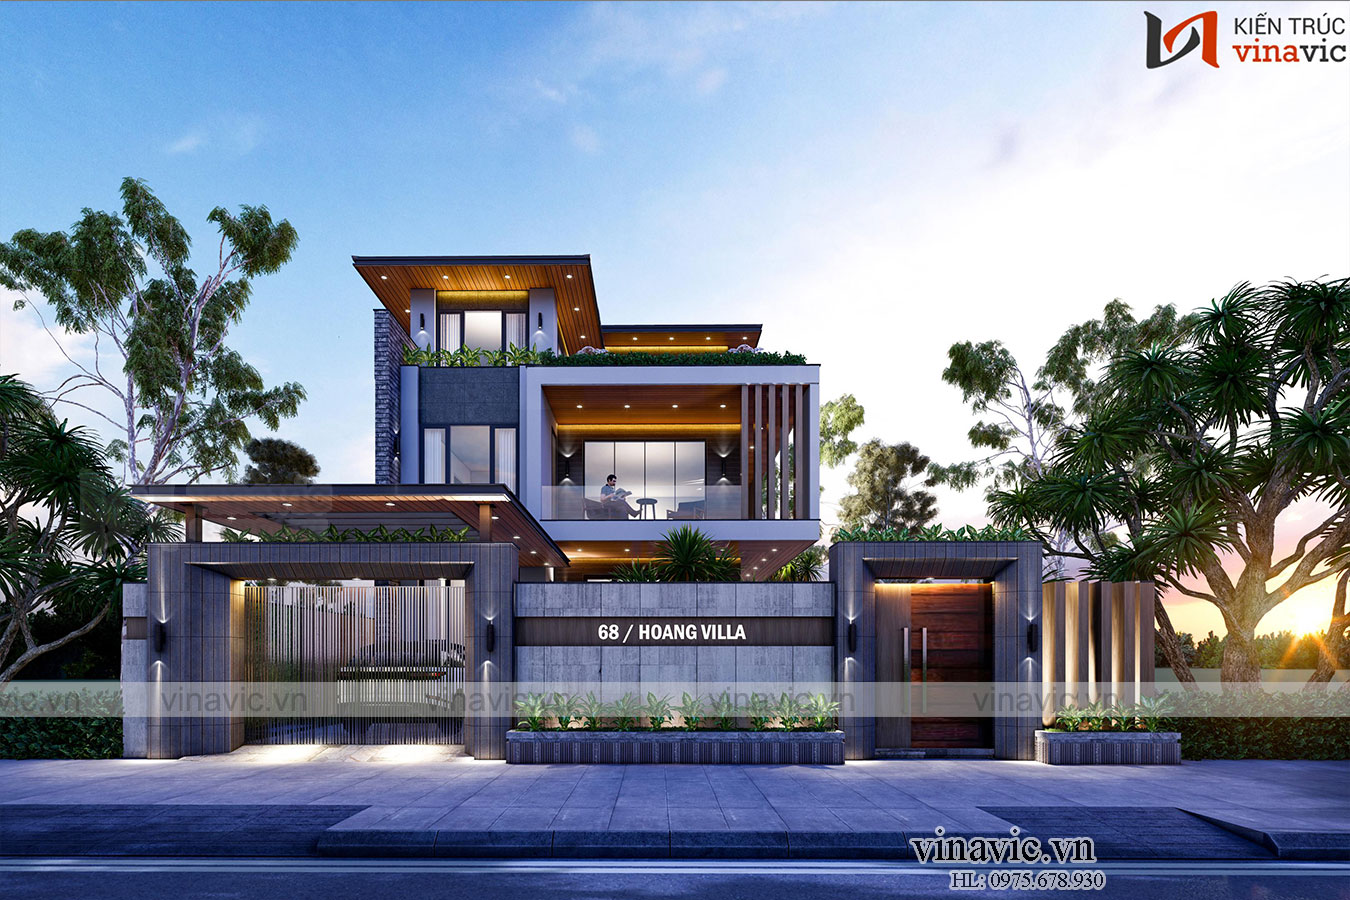 Thiết kế villa 3 tầng hiện đại ở Chương Mỹ - Hà Nội